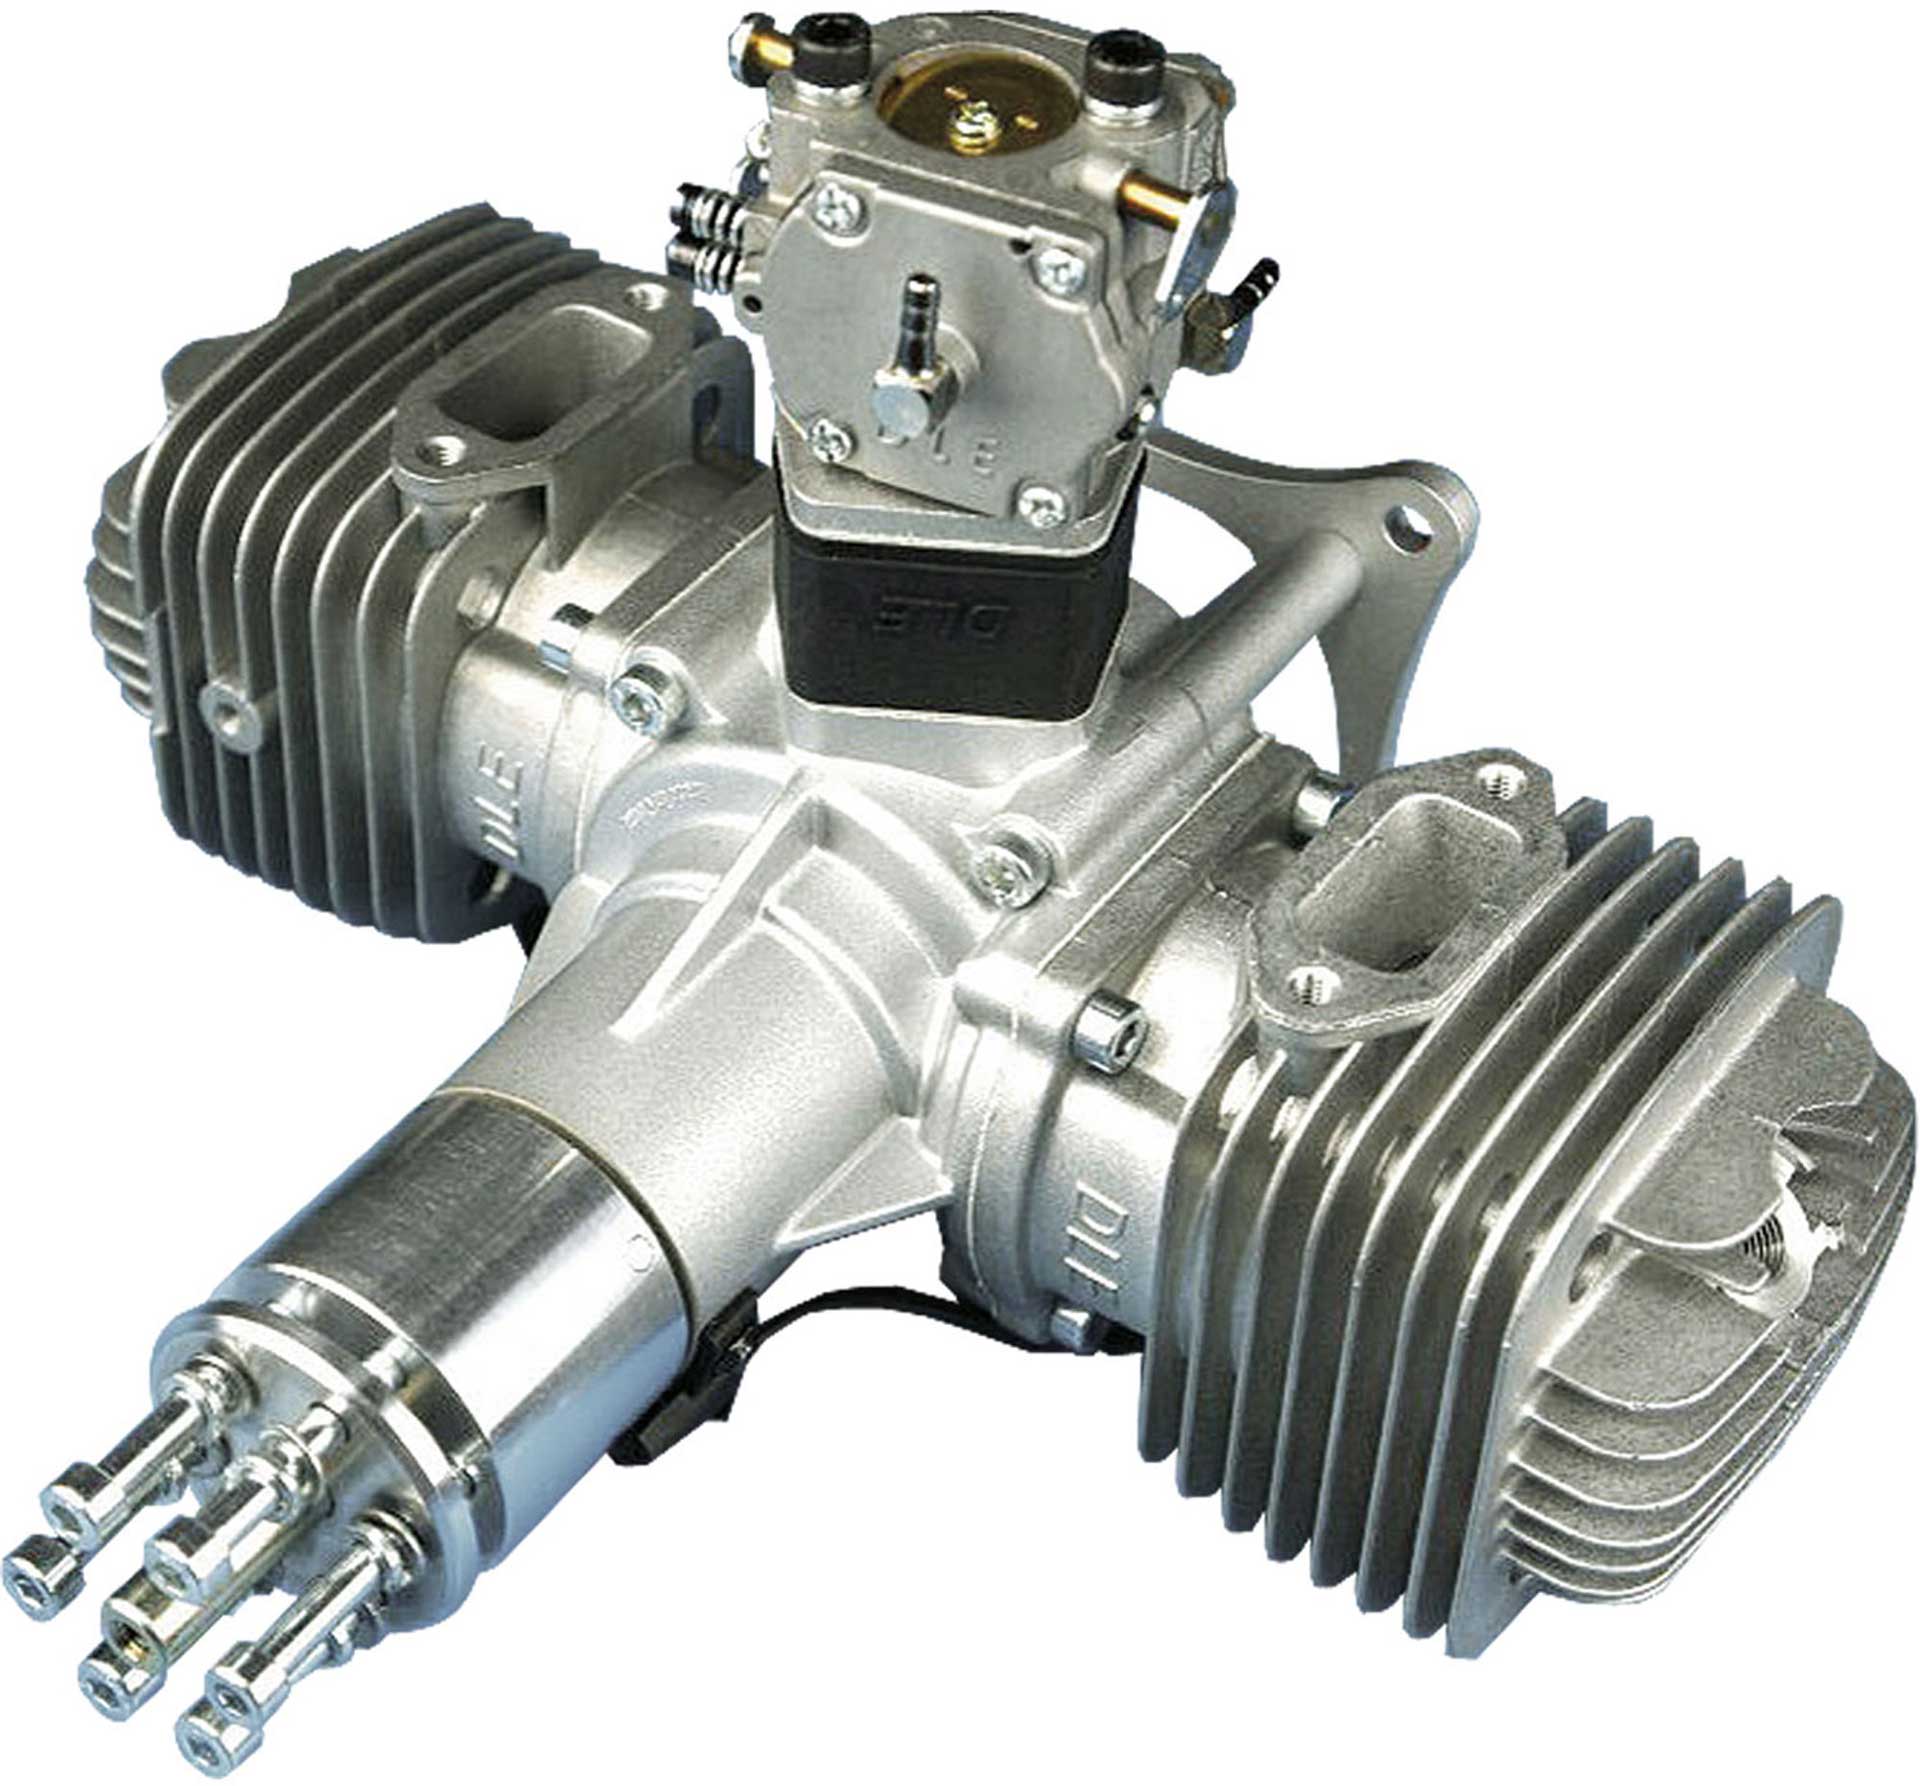 DLE Engines DLE 120 Moteur essence 2 cylindres Original